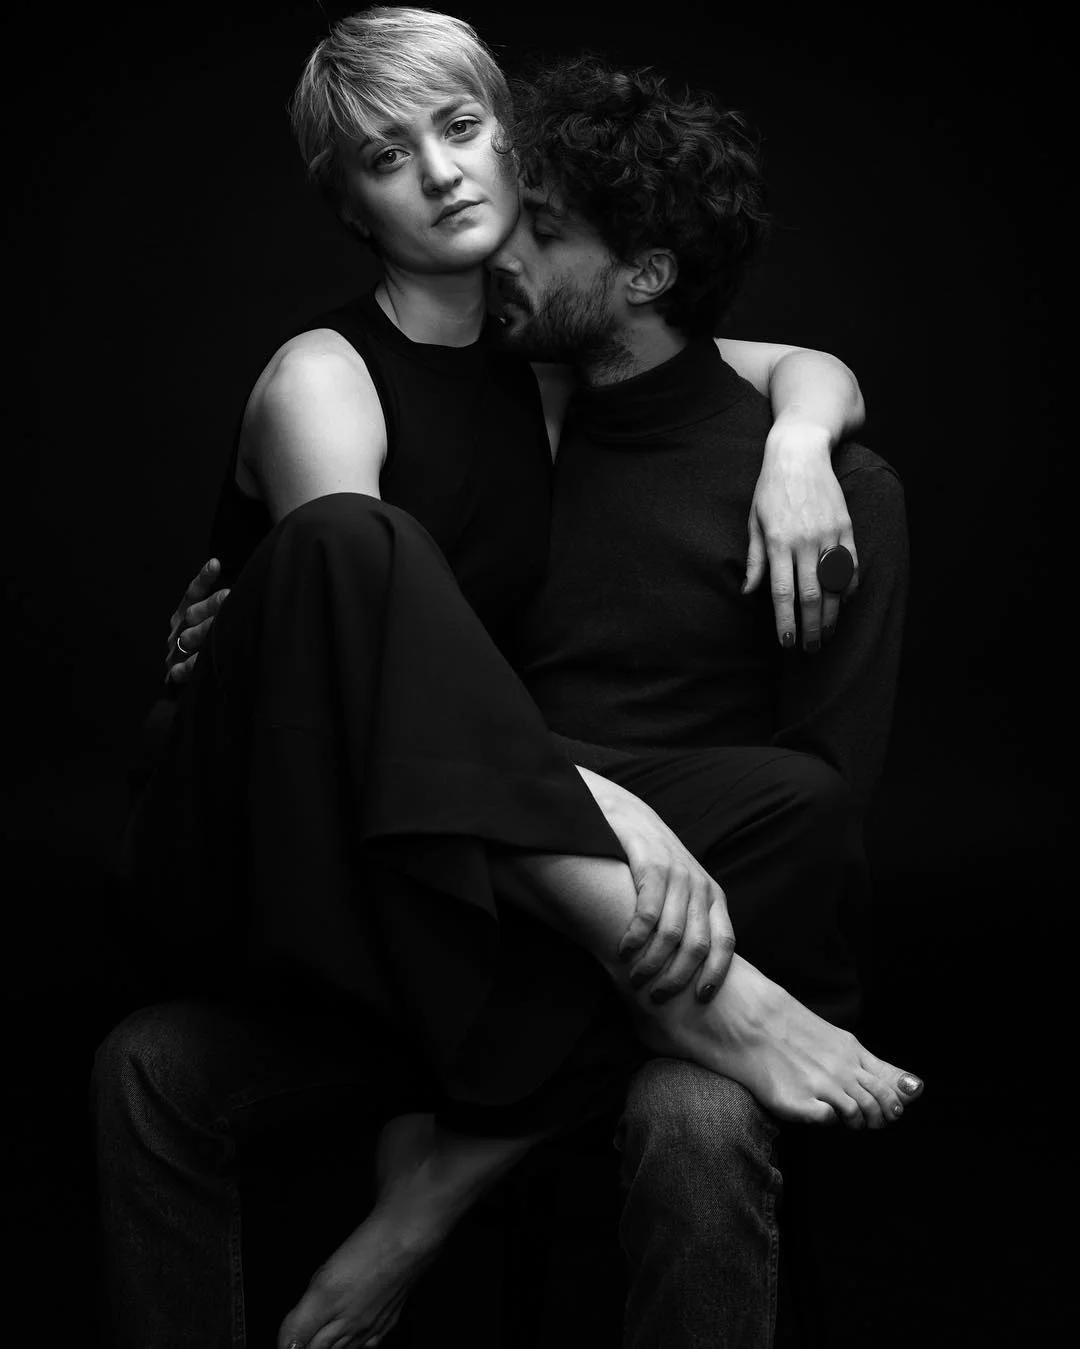 Віра Кекелія в чуттєвій фотосесії з коханим - це справжня естетична насолода - фото 425093